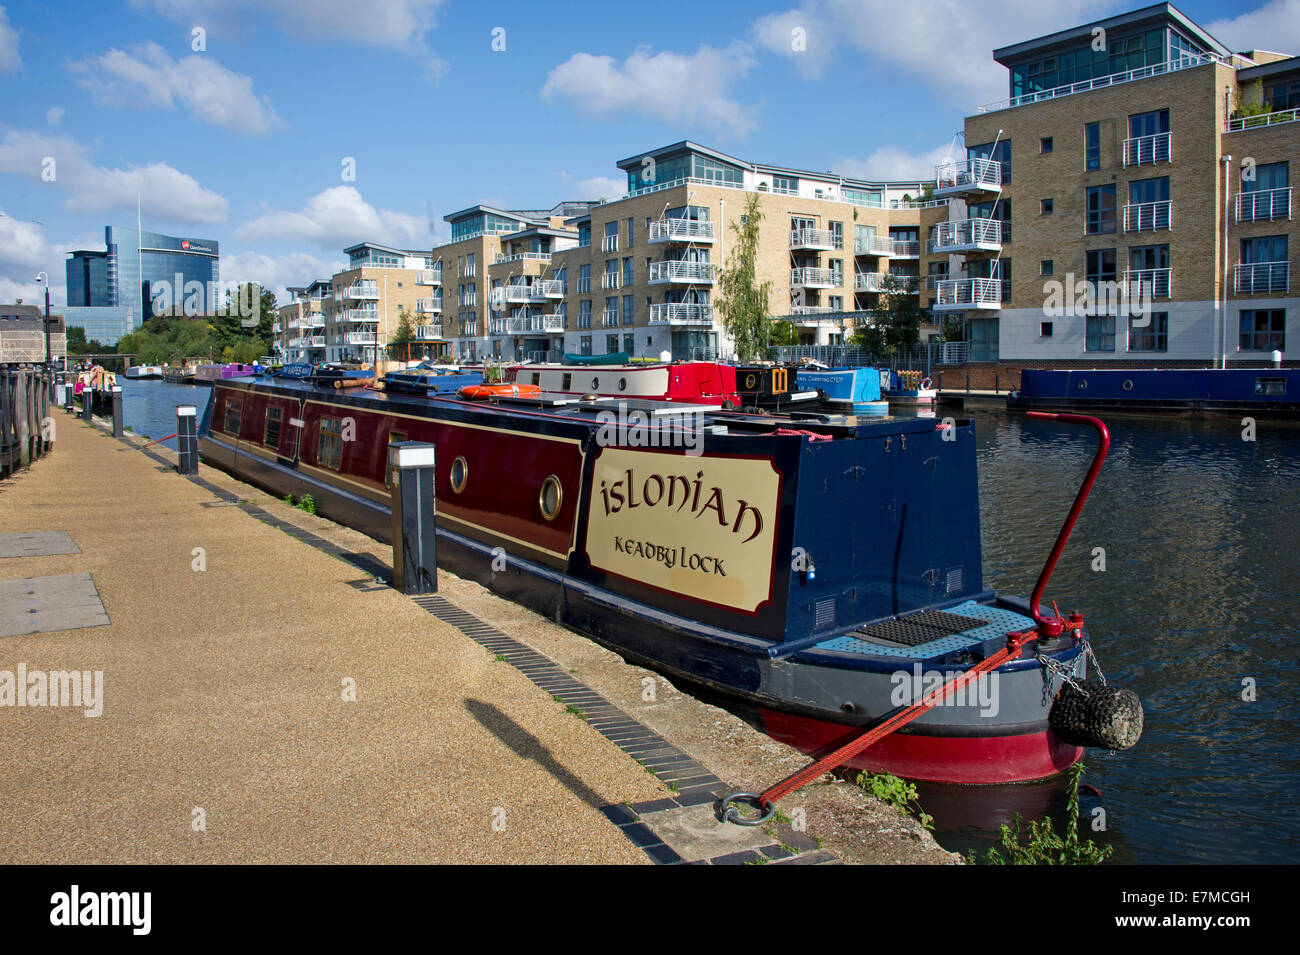 A narrowboat barge at Brentford Lock, London Stock Photo